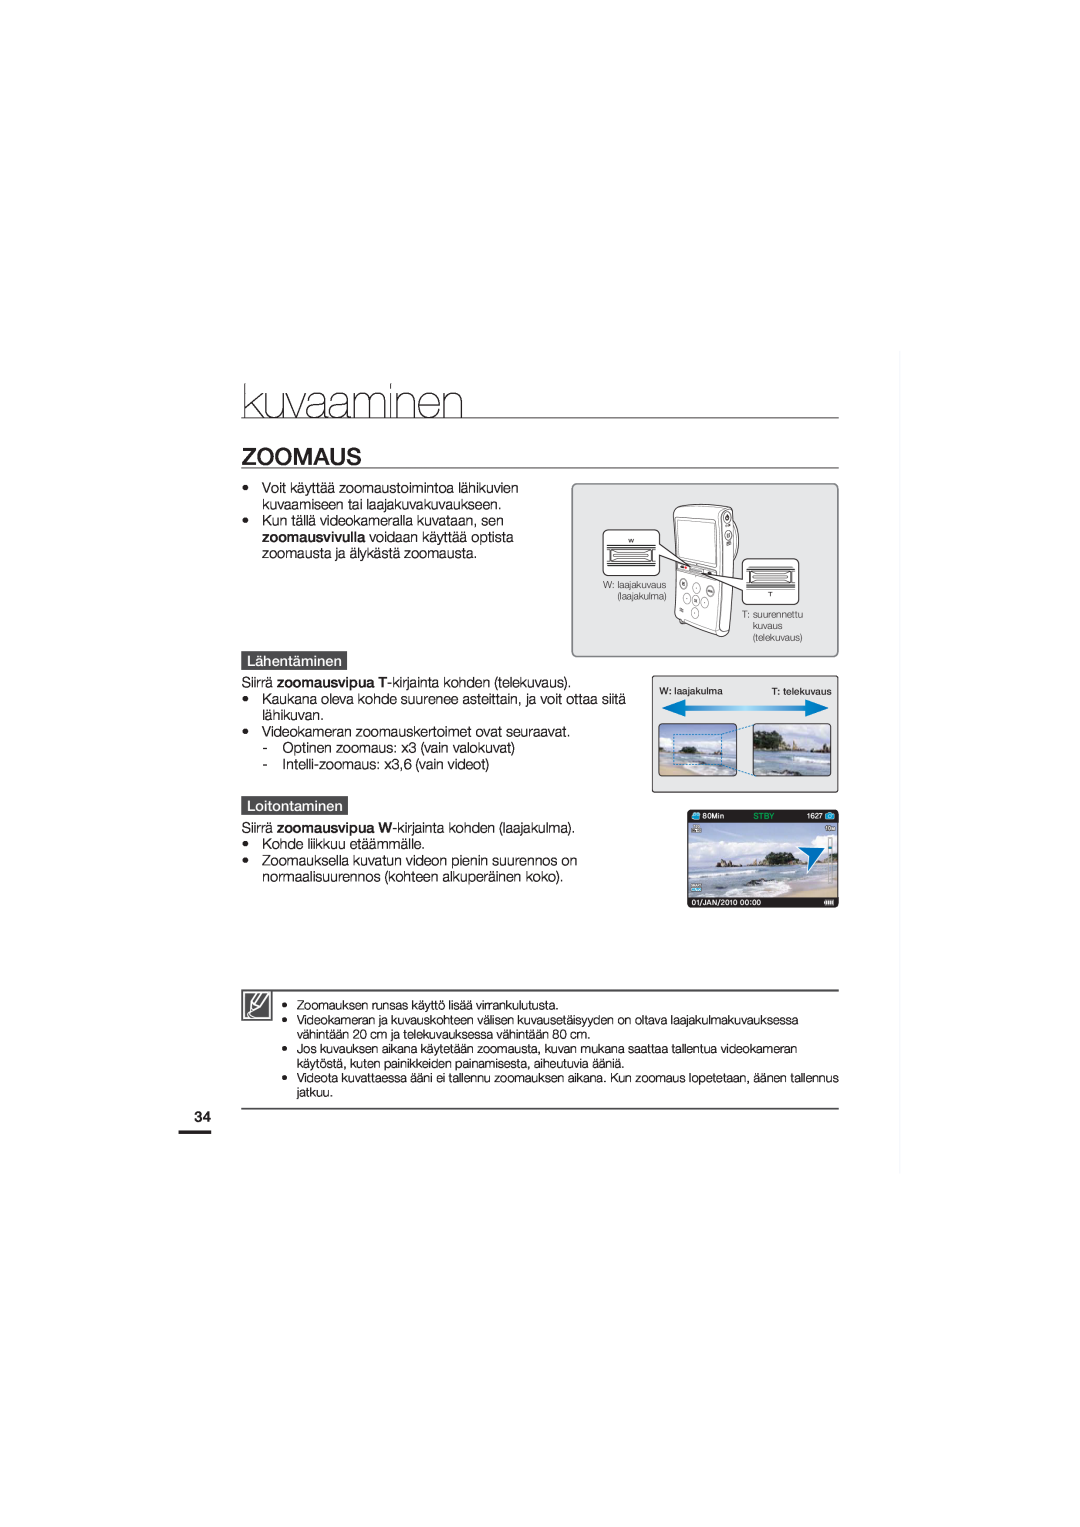 Samsung HMX-U20BP/EDC manual Zoomaus, Lähentäminen, Loitontaminen, kuvaaminen 